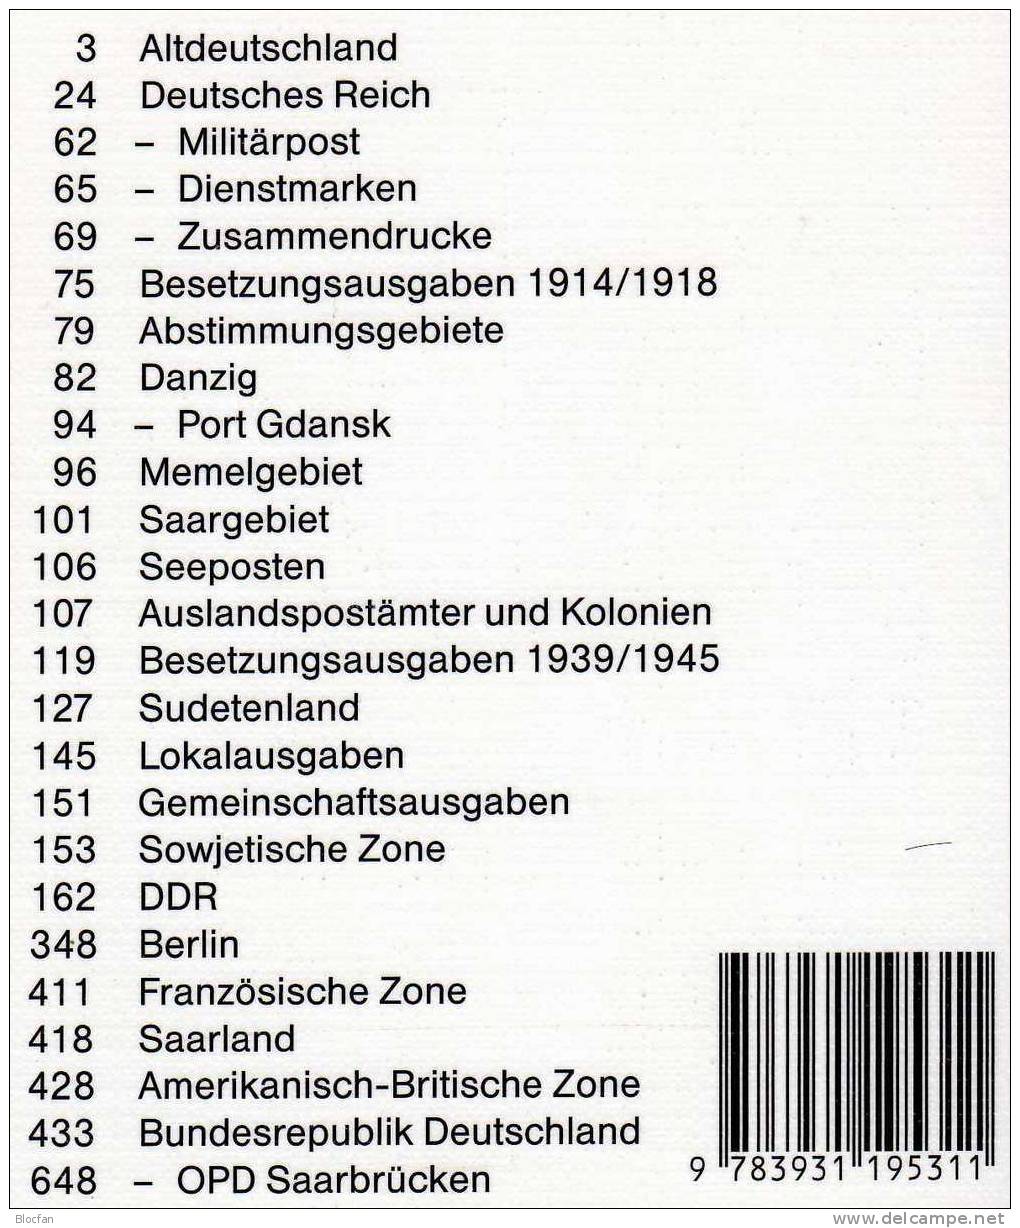 Briefmarken Katalog 2003 Antiquarisch 12€ Philex Altdeutschland Deutsches Reich Saar Danzig Memel SBZ DDR Berlin BRD - Alemania